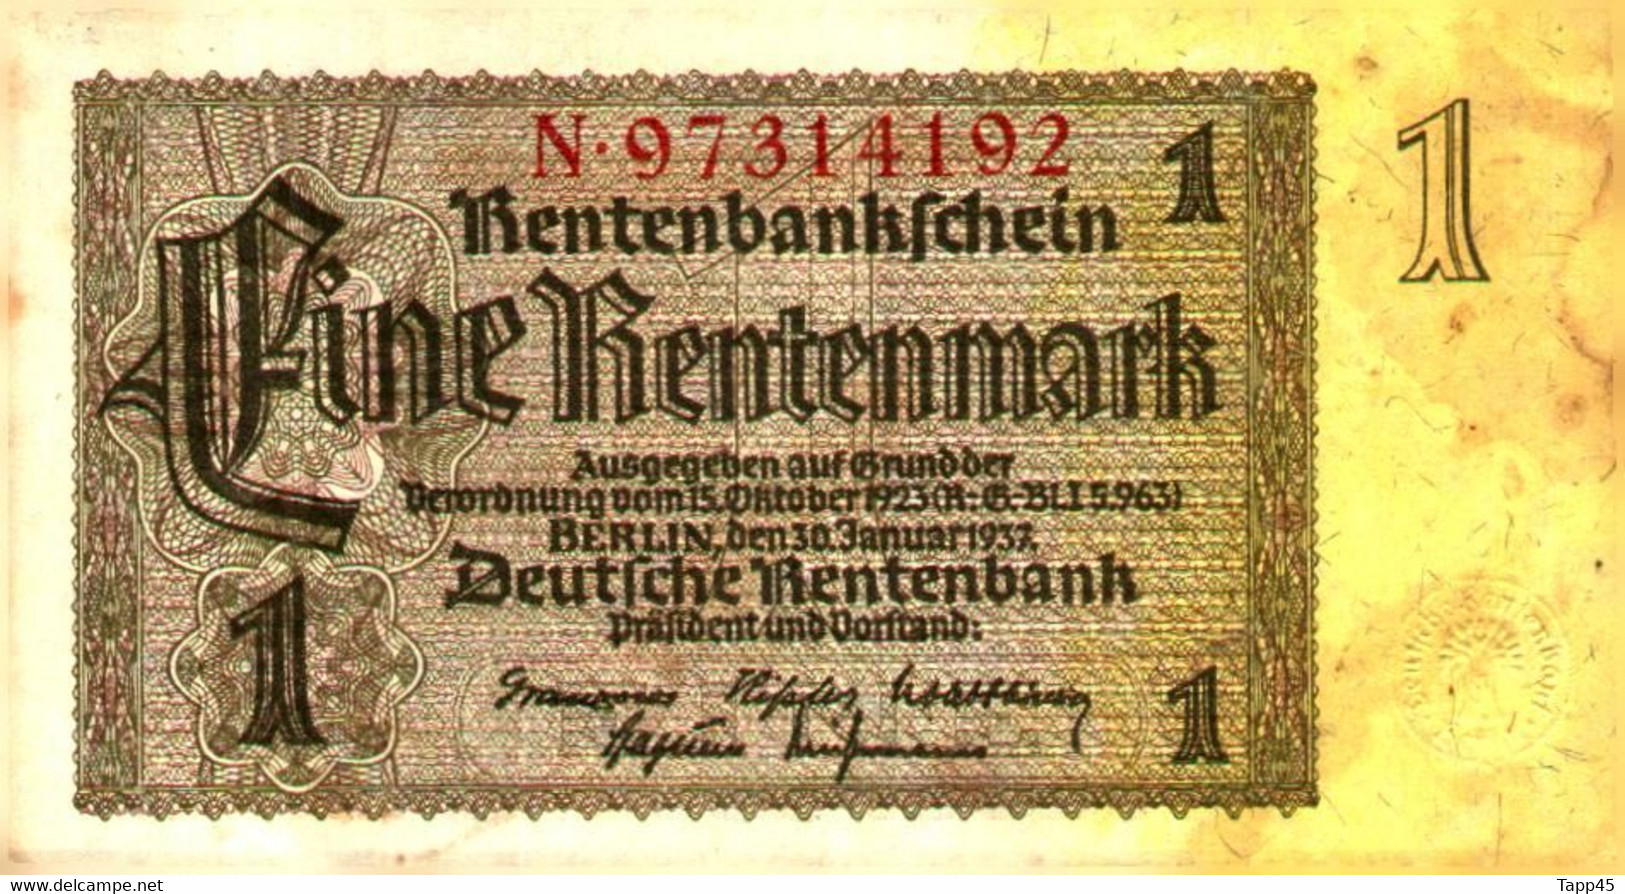 Billets > Allemagne >  1 Rentenmark  > C 04 - 1 Rentenmark